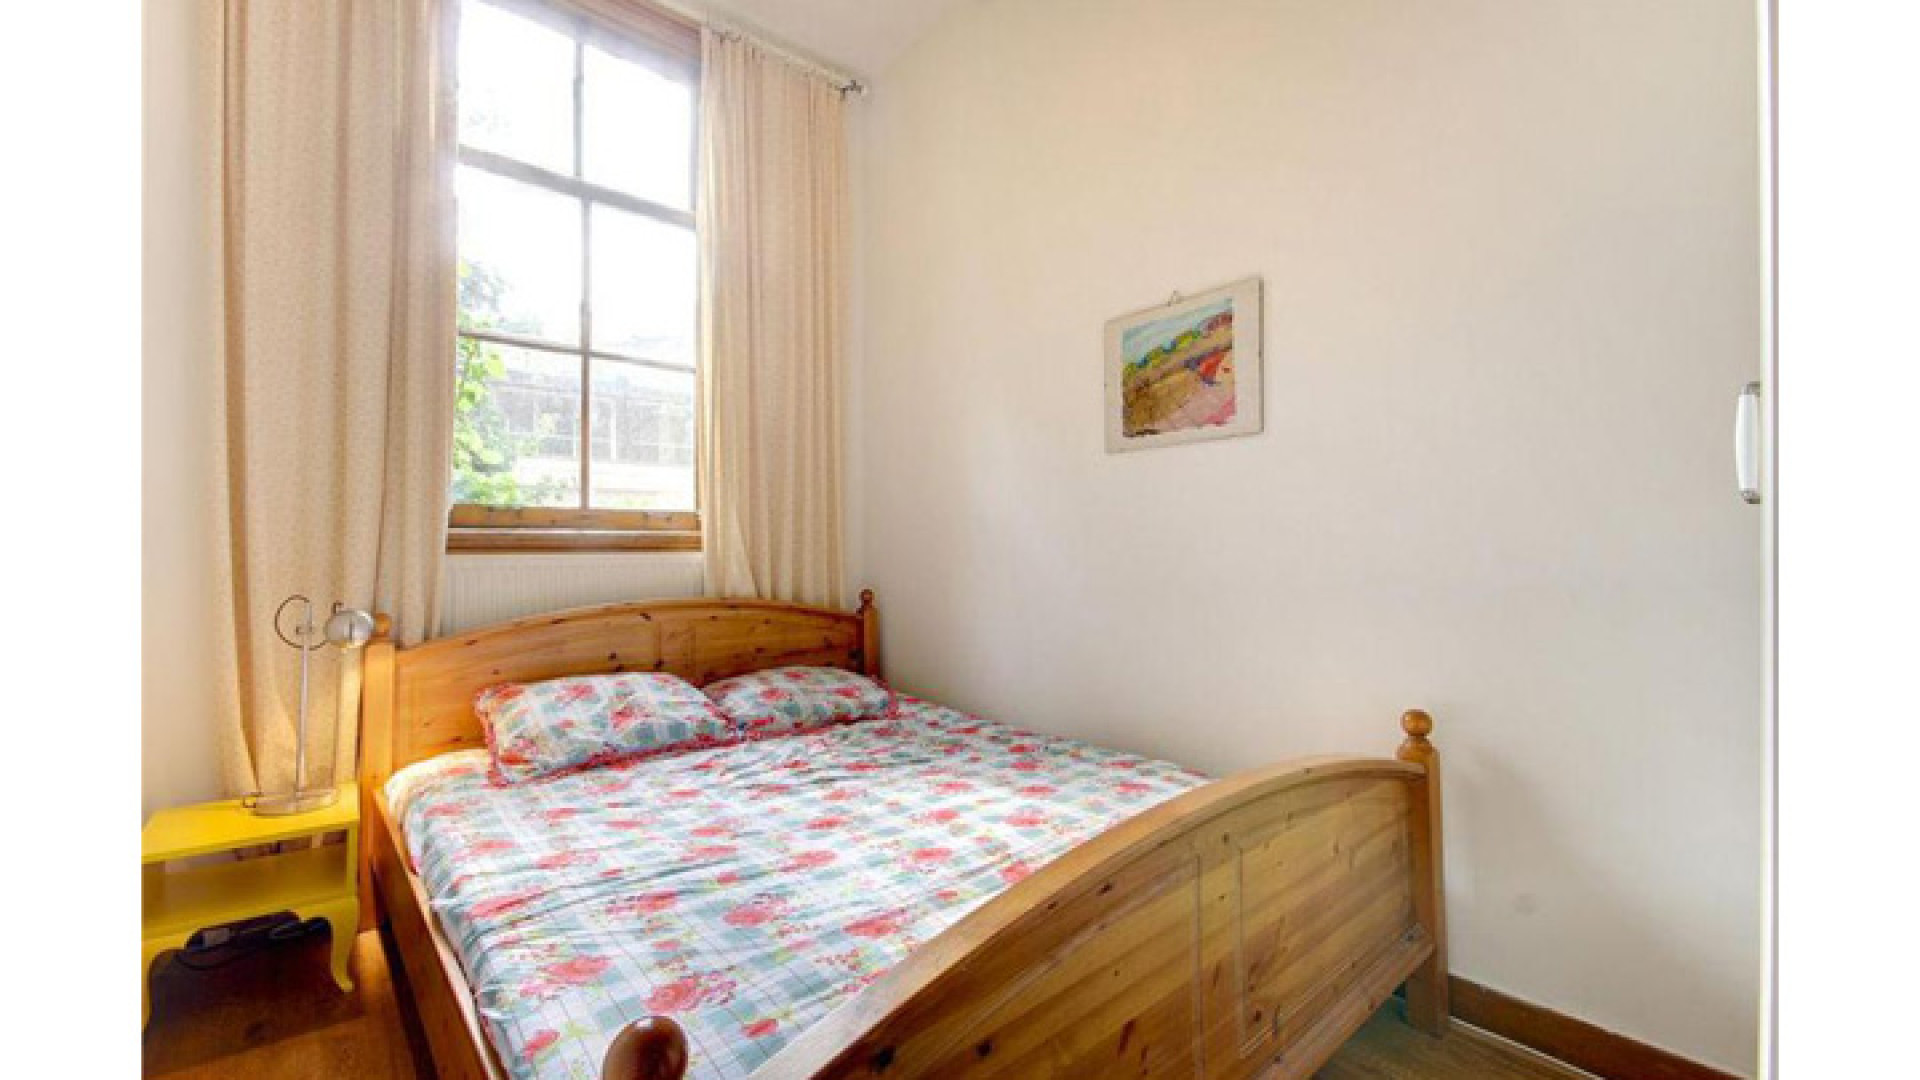 Loes Luca koopt tweekamer appartement in Amsterdam. Zie foto's